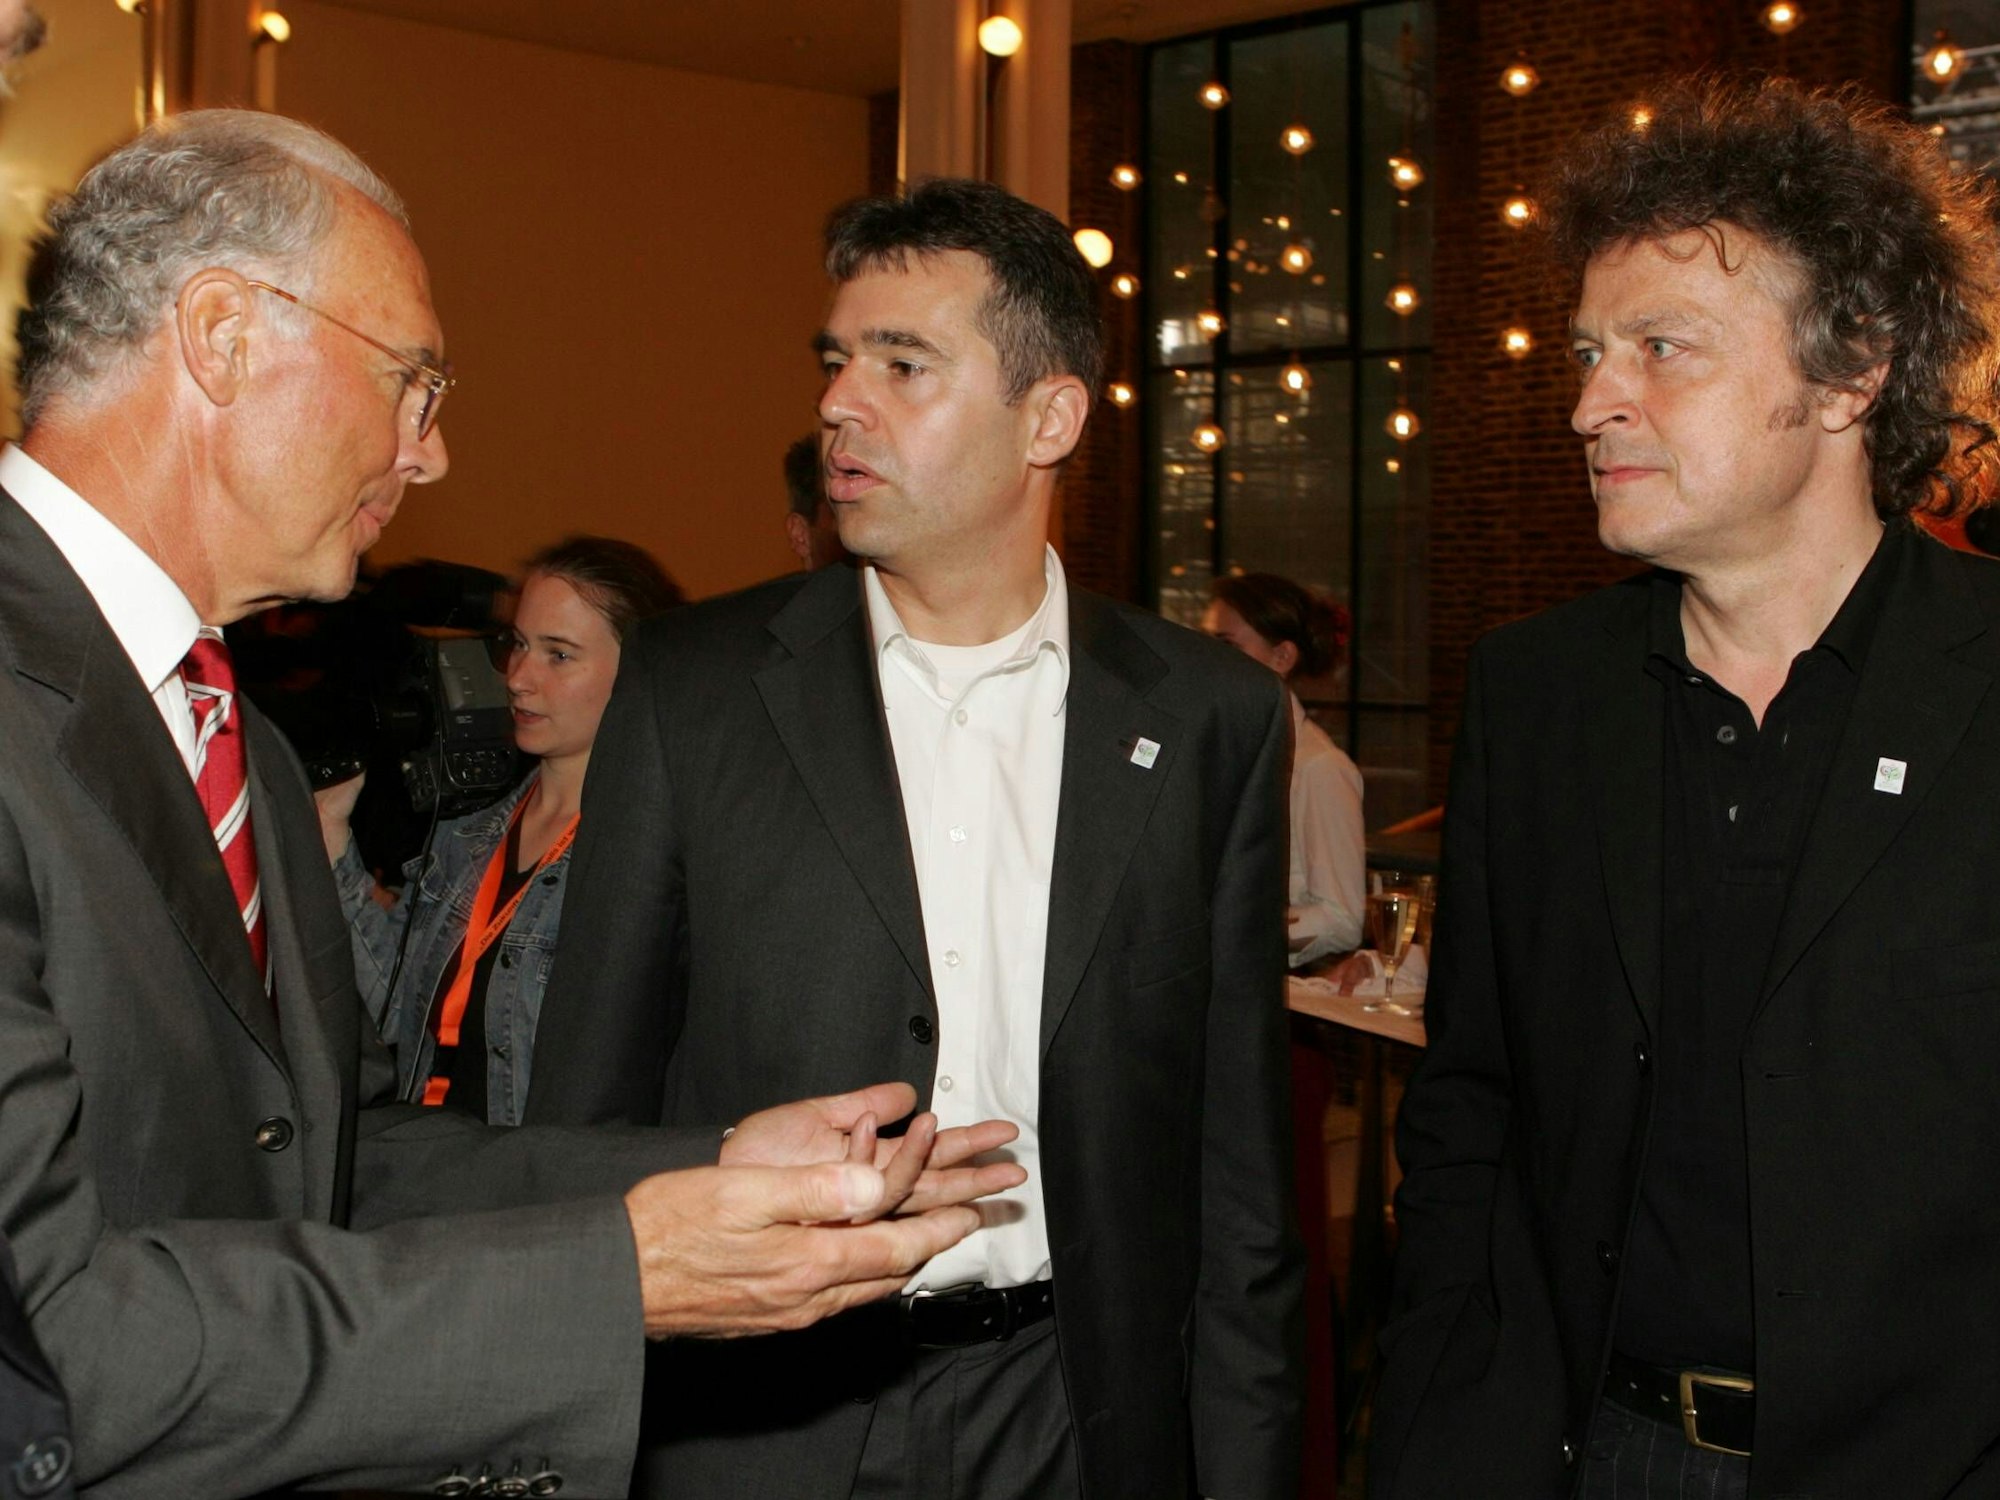 Sänger Wolfgang Niedecken (re., BAP), Manager Andreas Rettig (Mitte, 1. FC Köln) und OK Präsident Franz Beckenbauer (Deutschland) im Gespräch.